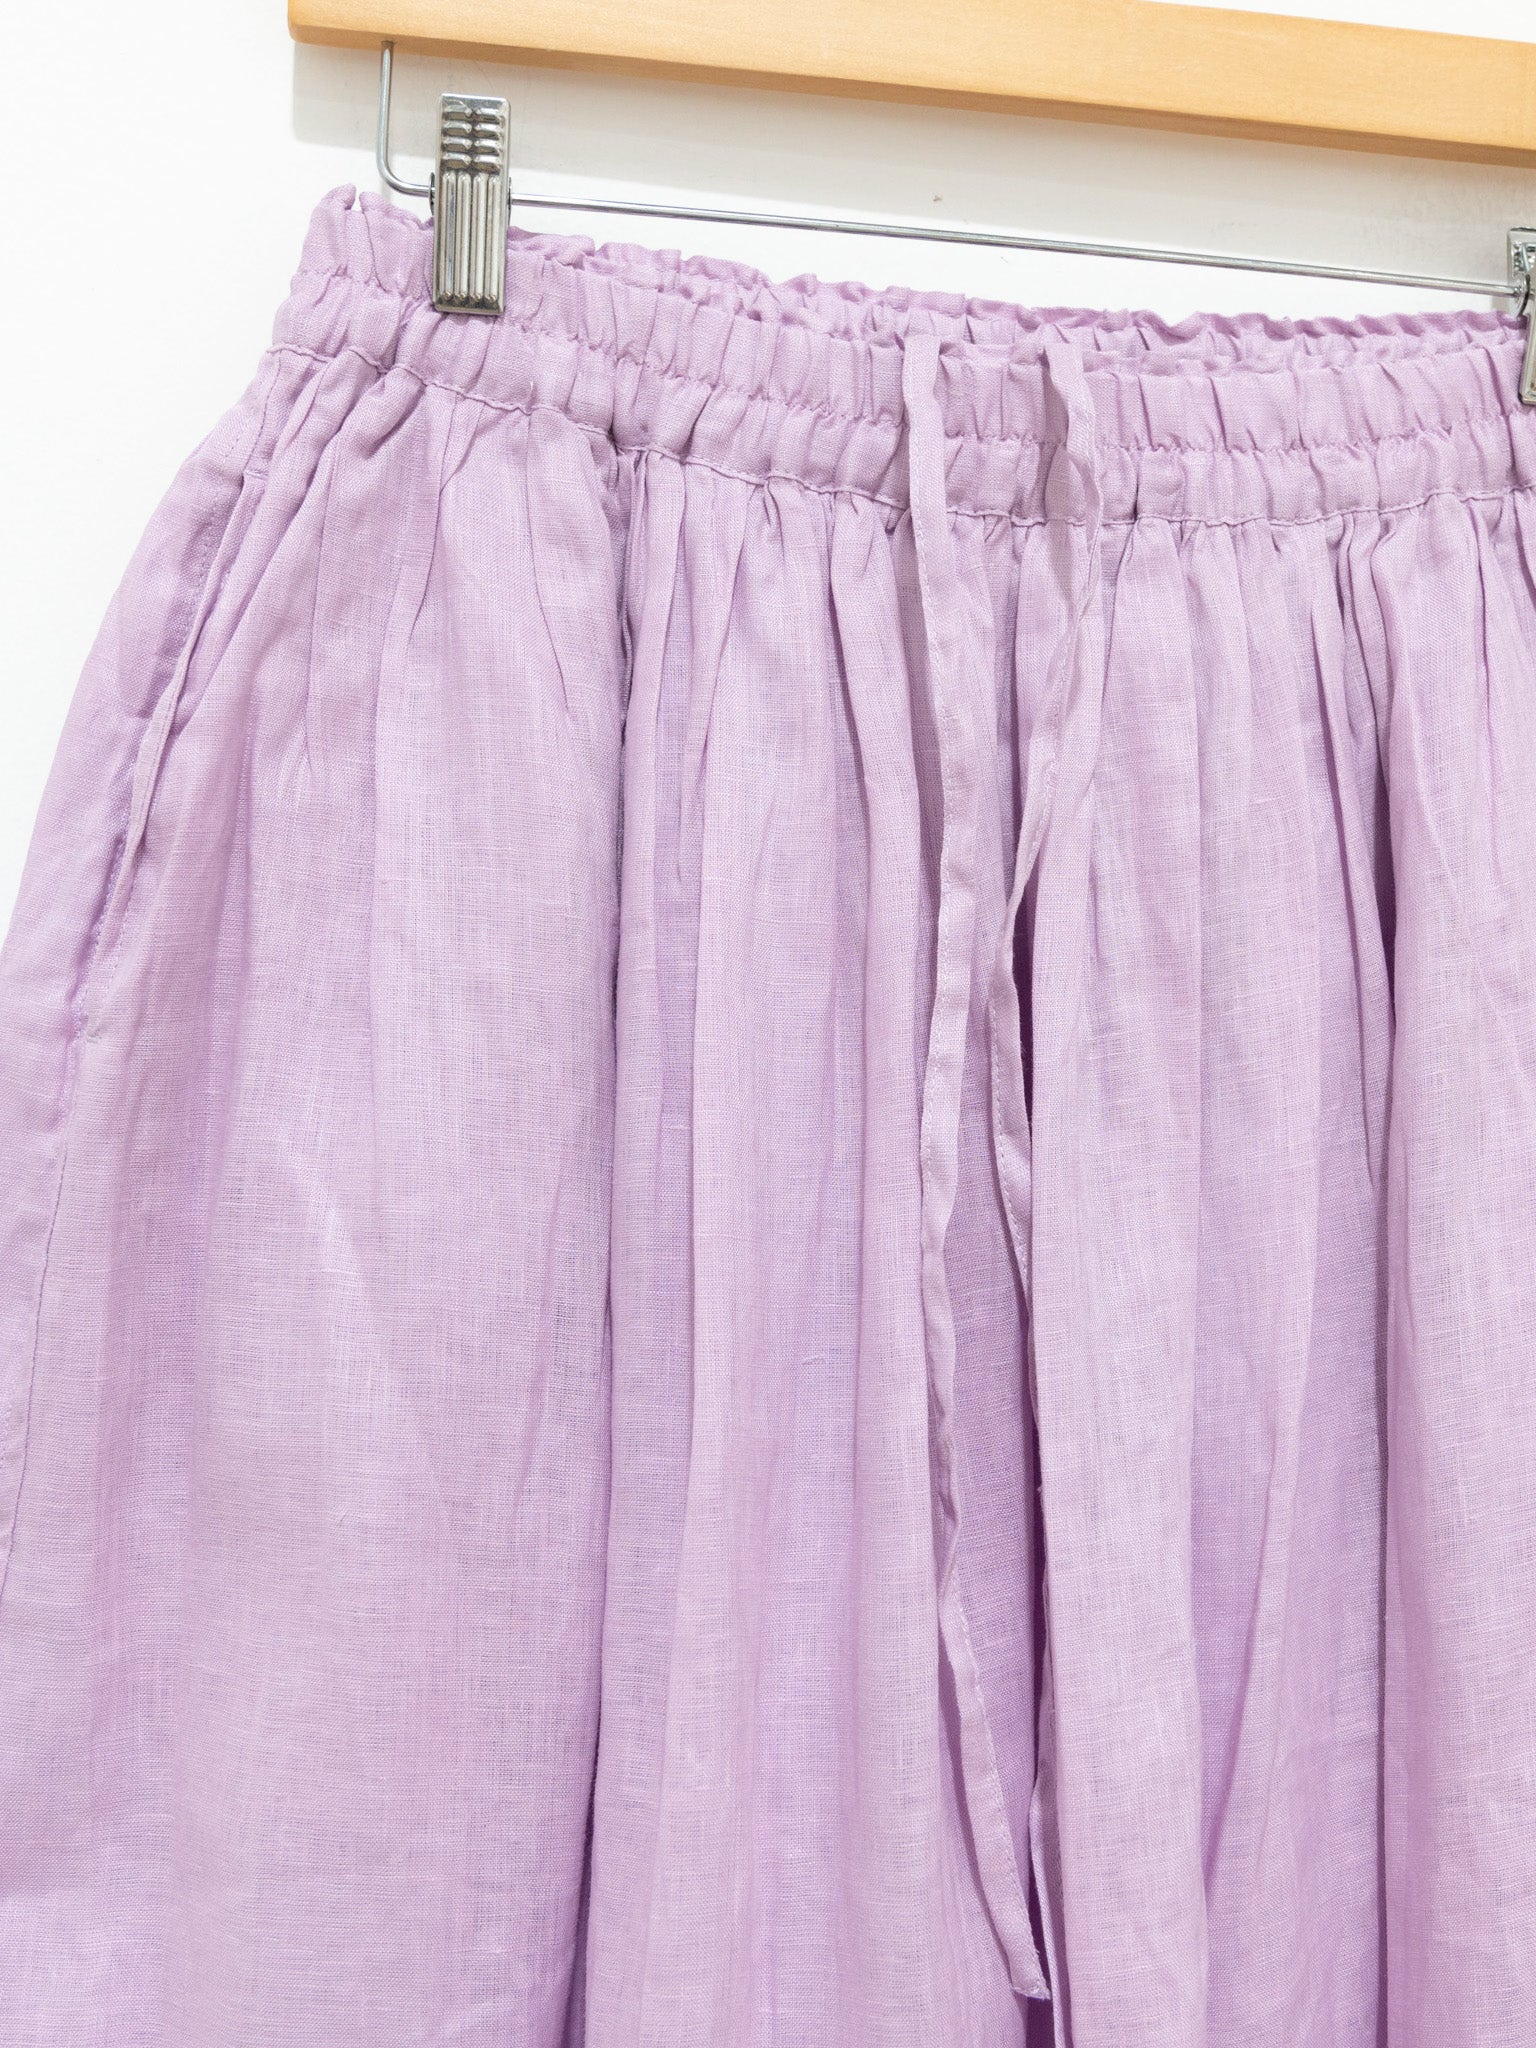 Namu Shop - Ichi Antiquites Color Linen Skirt - Violet